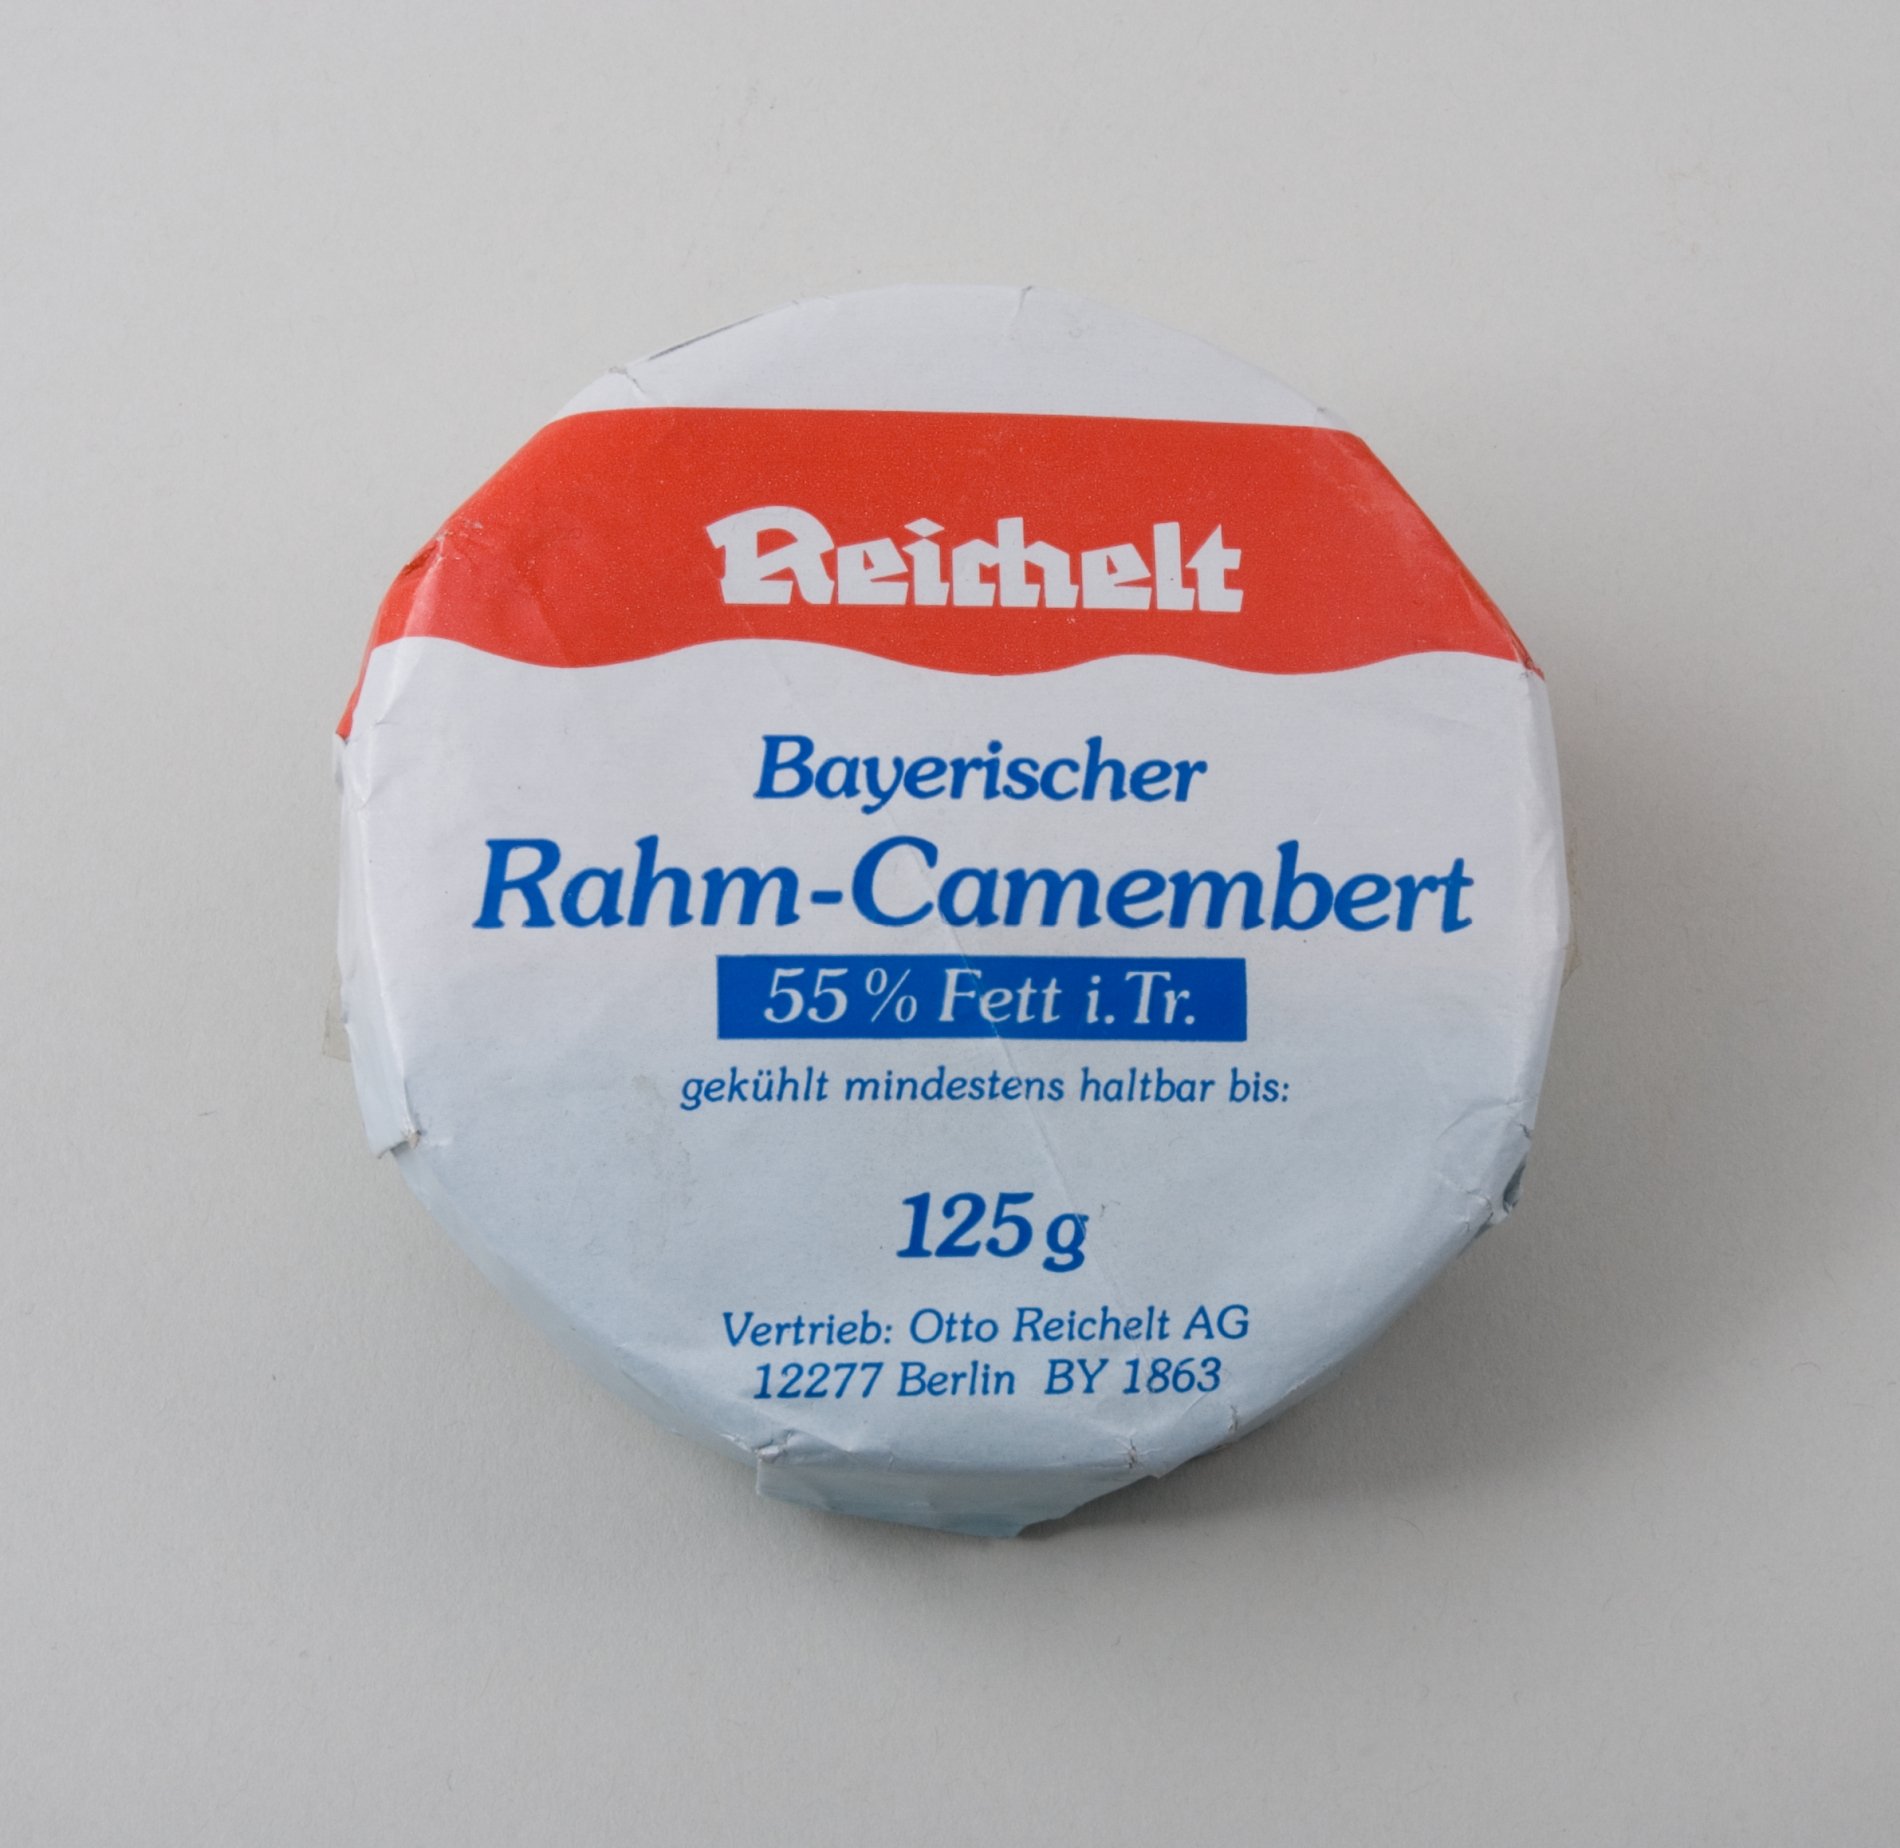 Warenmuster: "Bayerischer Rahm-Camembert" der Firma "Reichelt" (Stiftung Domäne Dahlem - Landgut und Museum, Weiternutzung nur mit Genehmigung des Museums CC BY-NC-SA)